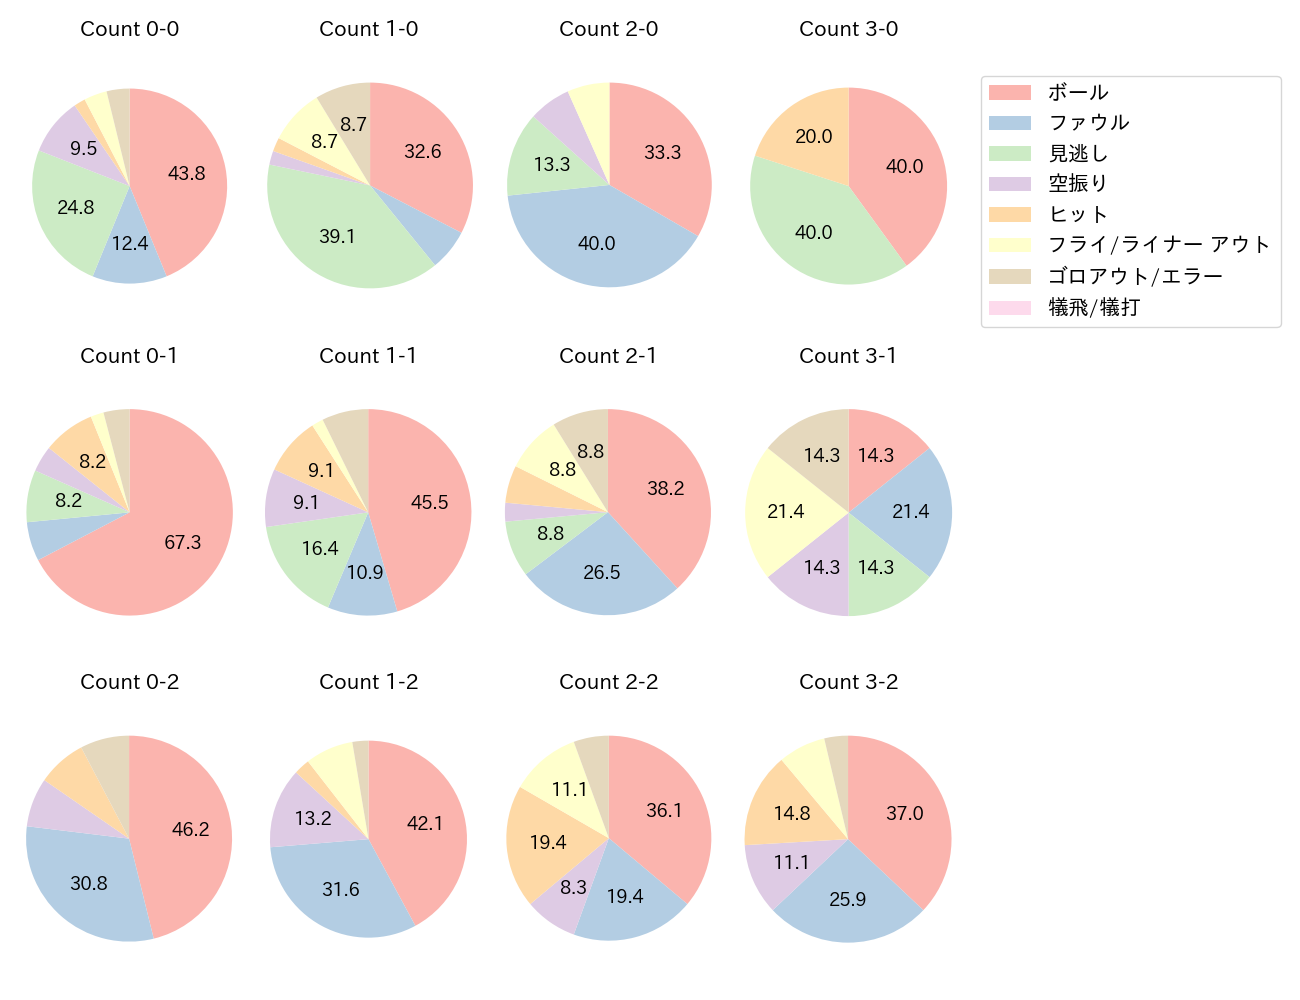 丸 佳浩の球数分布(2022年5月)